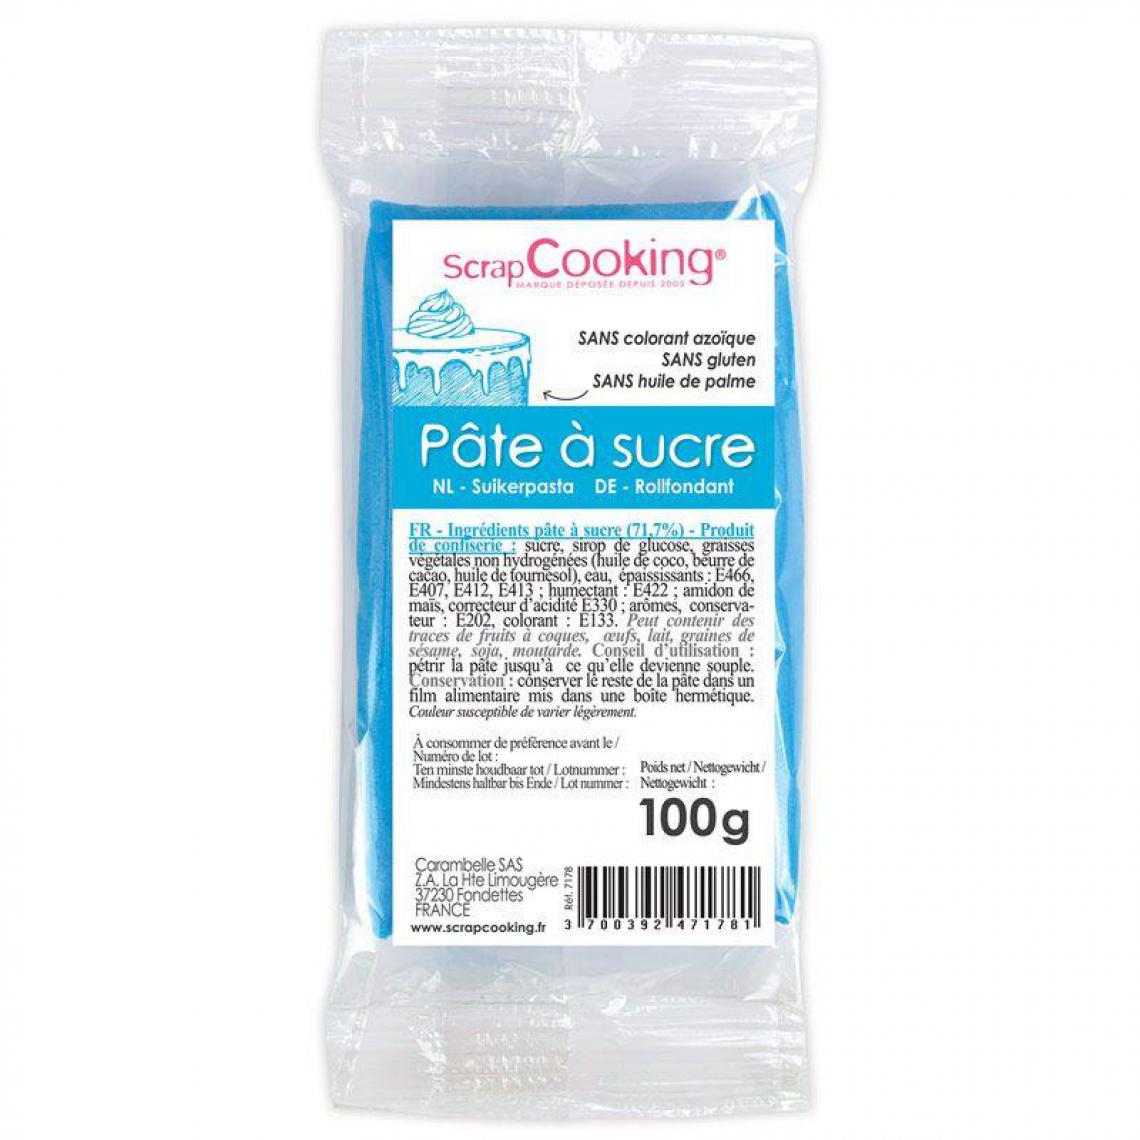 Scrapcooking - Pâte à sucre bleue 100 g - Kits créatifs